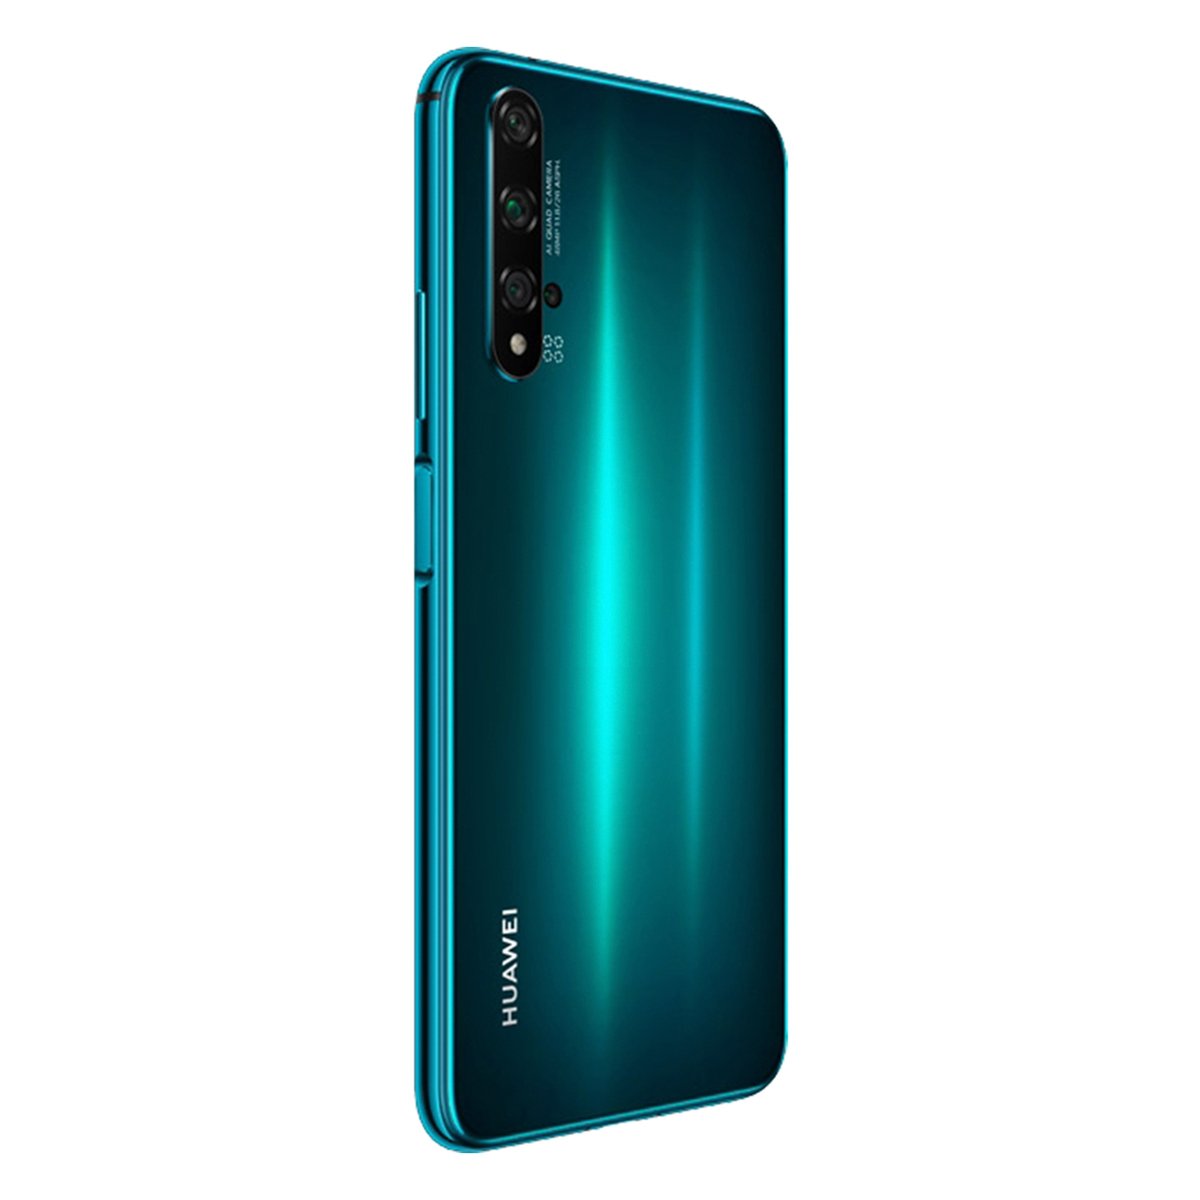 Huawei Nova 5T 128GB Green